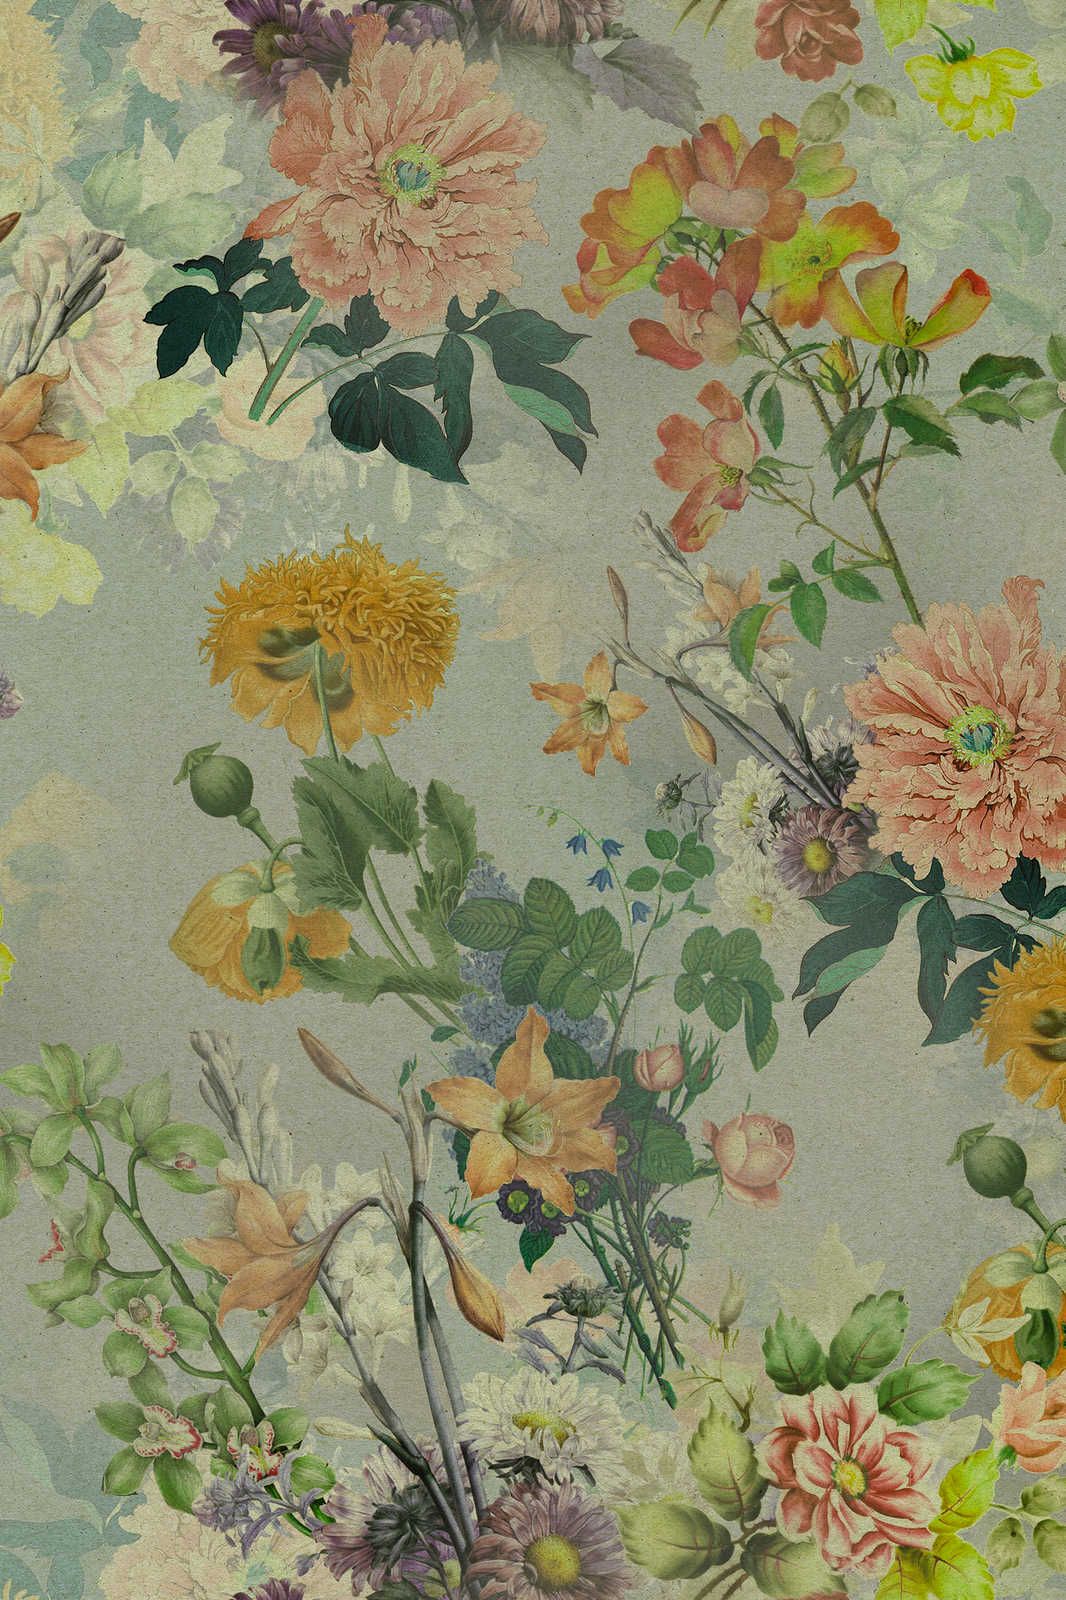             Amelies Home 2 - Fiori Quadro su tela con fiori colorati in stile country - 1,20 m x 0,80 m
        